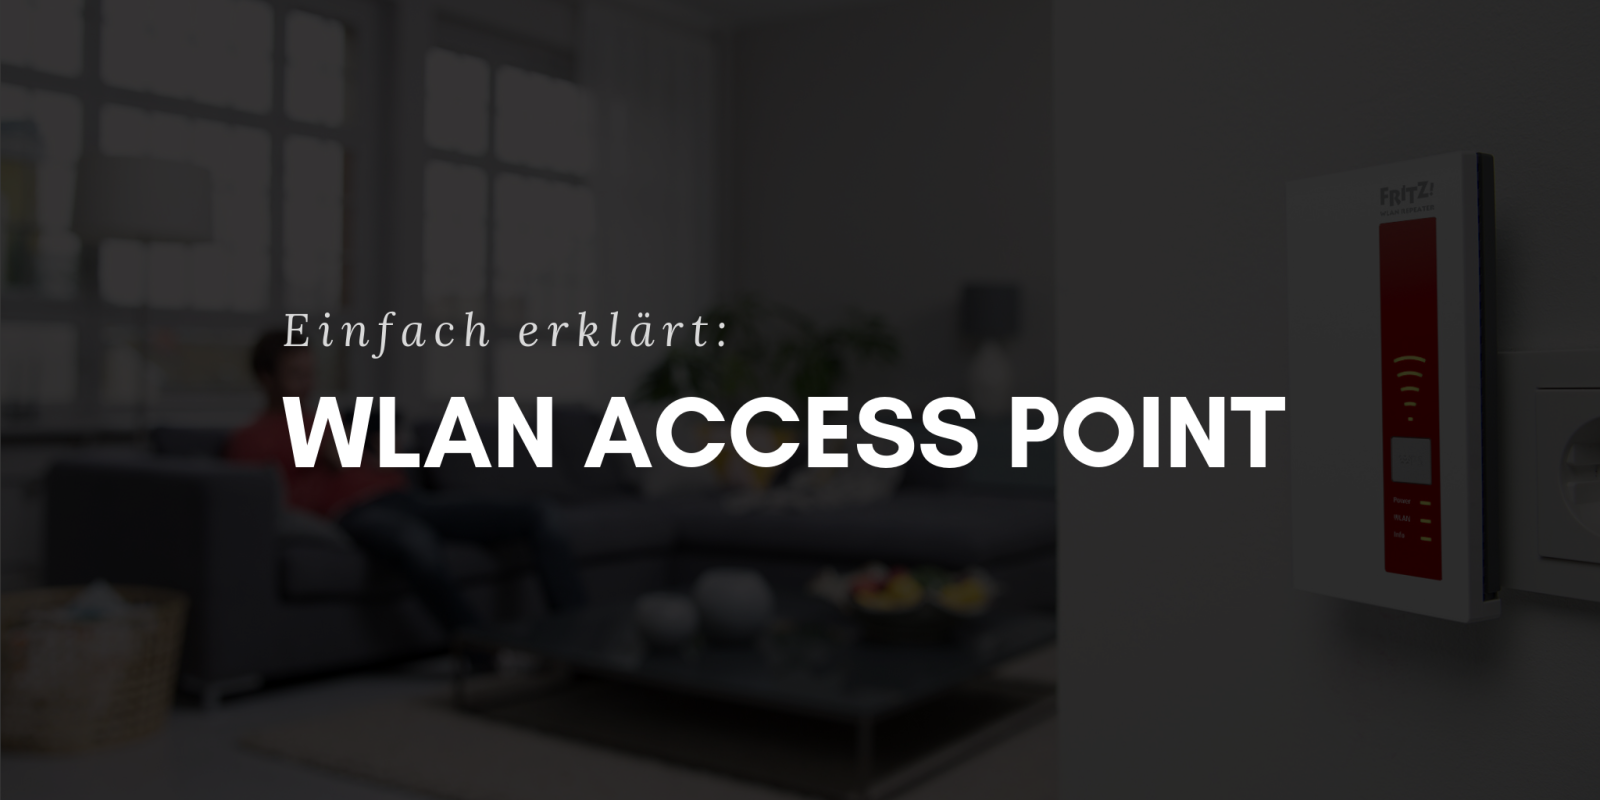 WLAN Access Point - Was ist das? Einfach erklärt